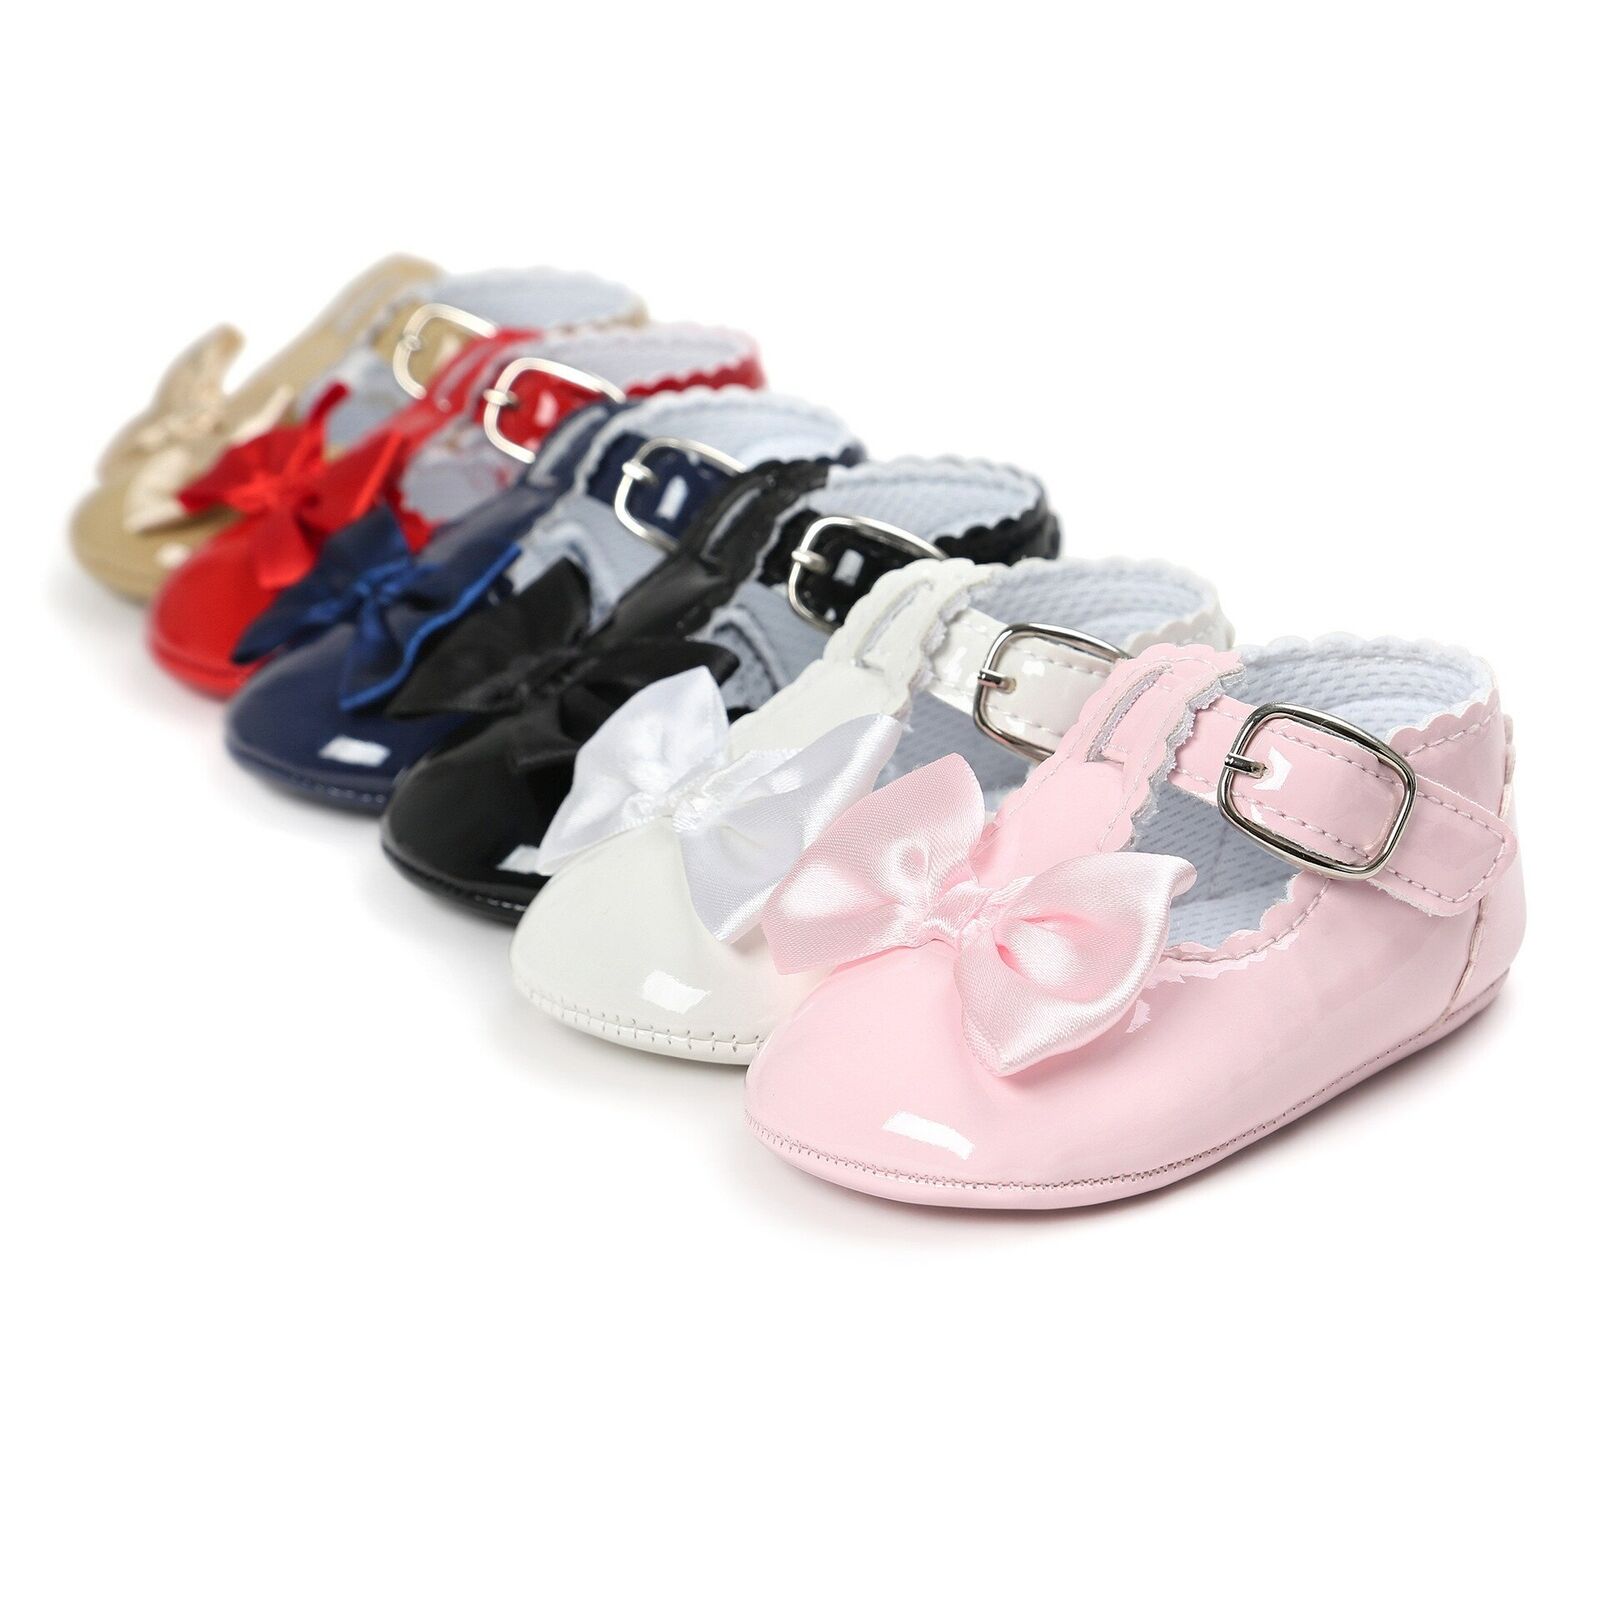 Informar Al frente Existe Zapatos Cómodos Zapatitos de Bebe Baby Niña Recien Nacido De Piel con Moño  | eBay